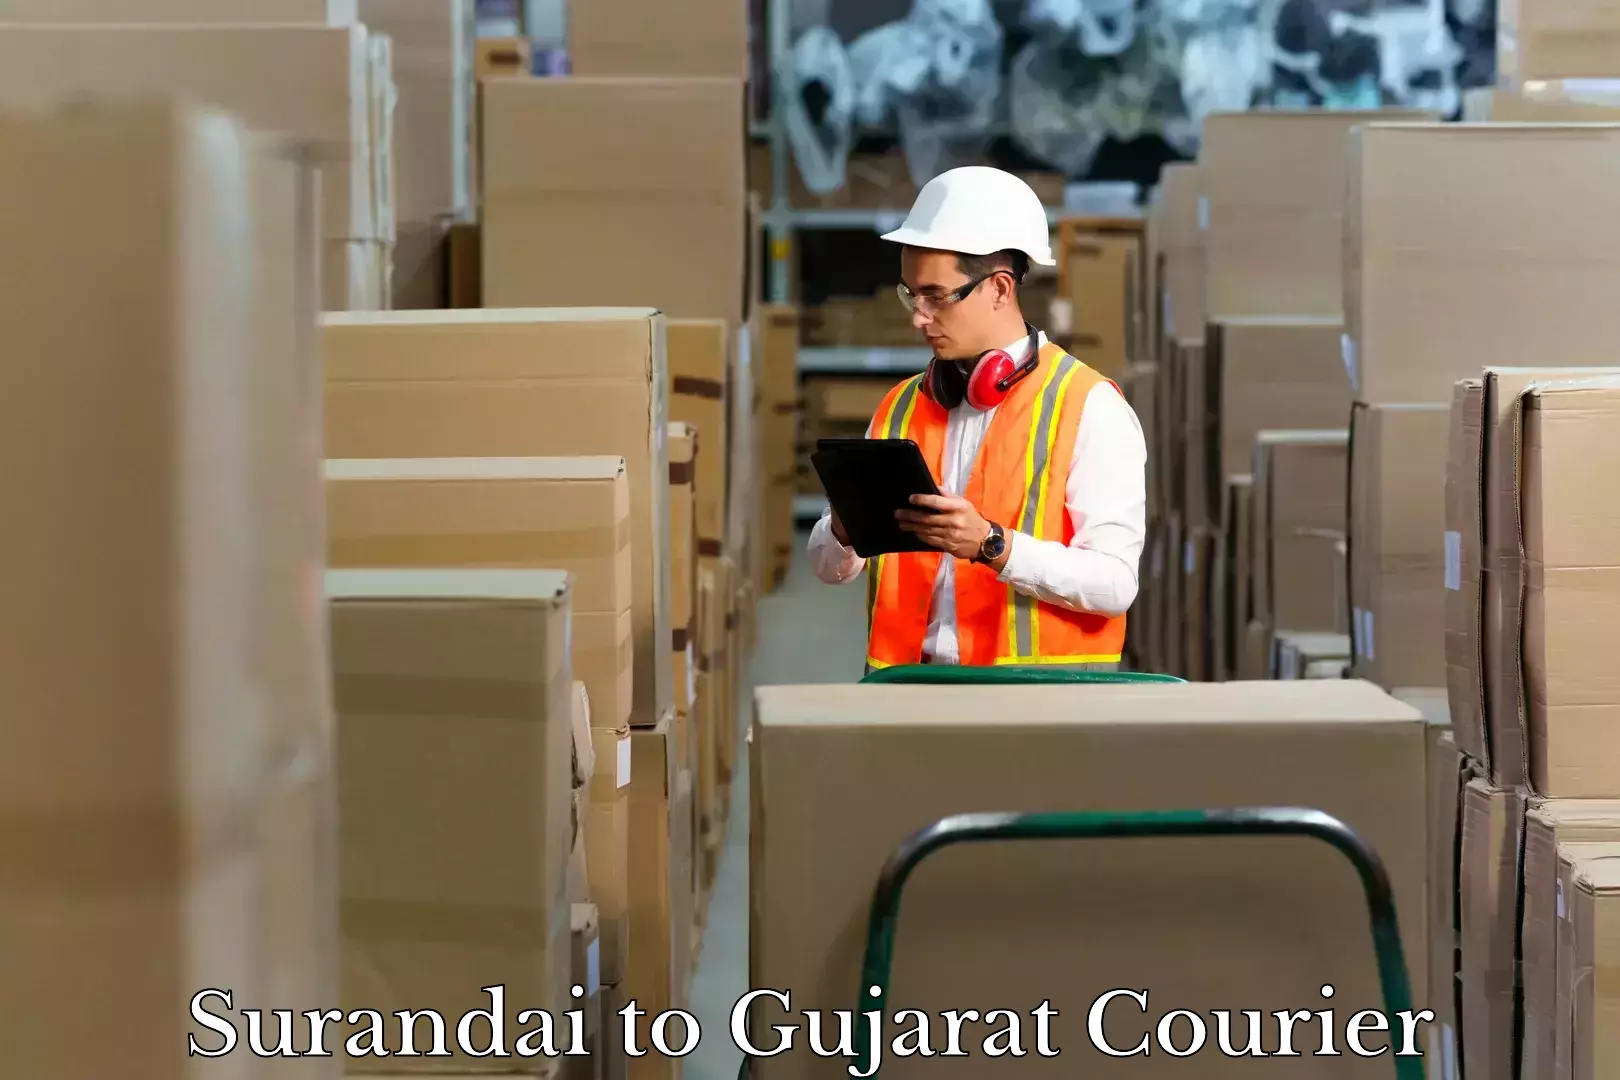 Baggage shipping experts Surandai to Gujarat